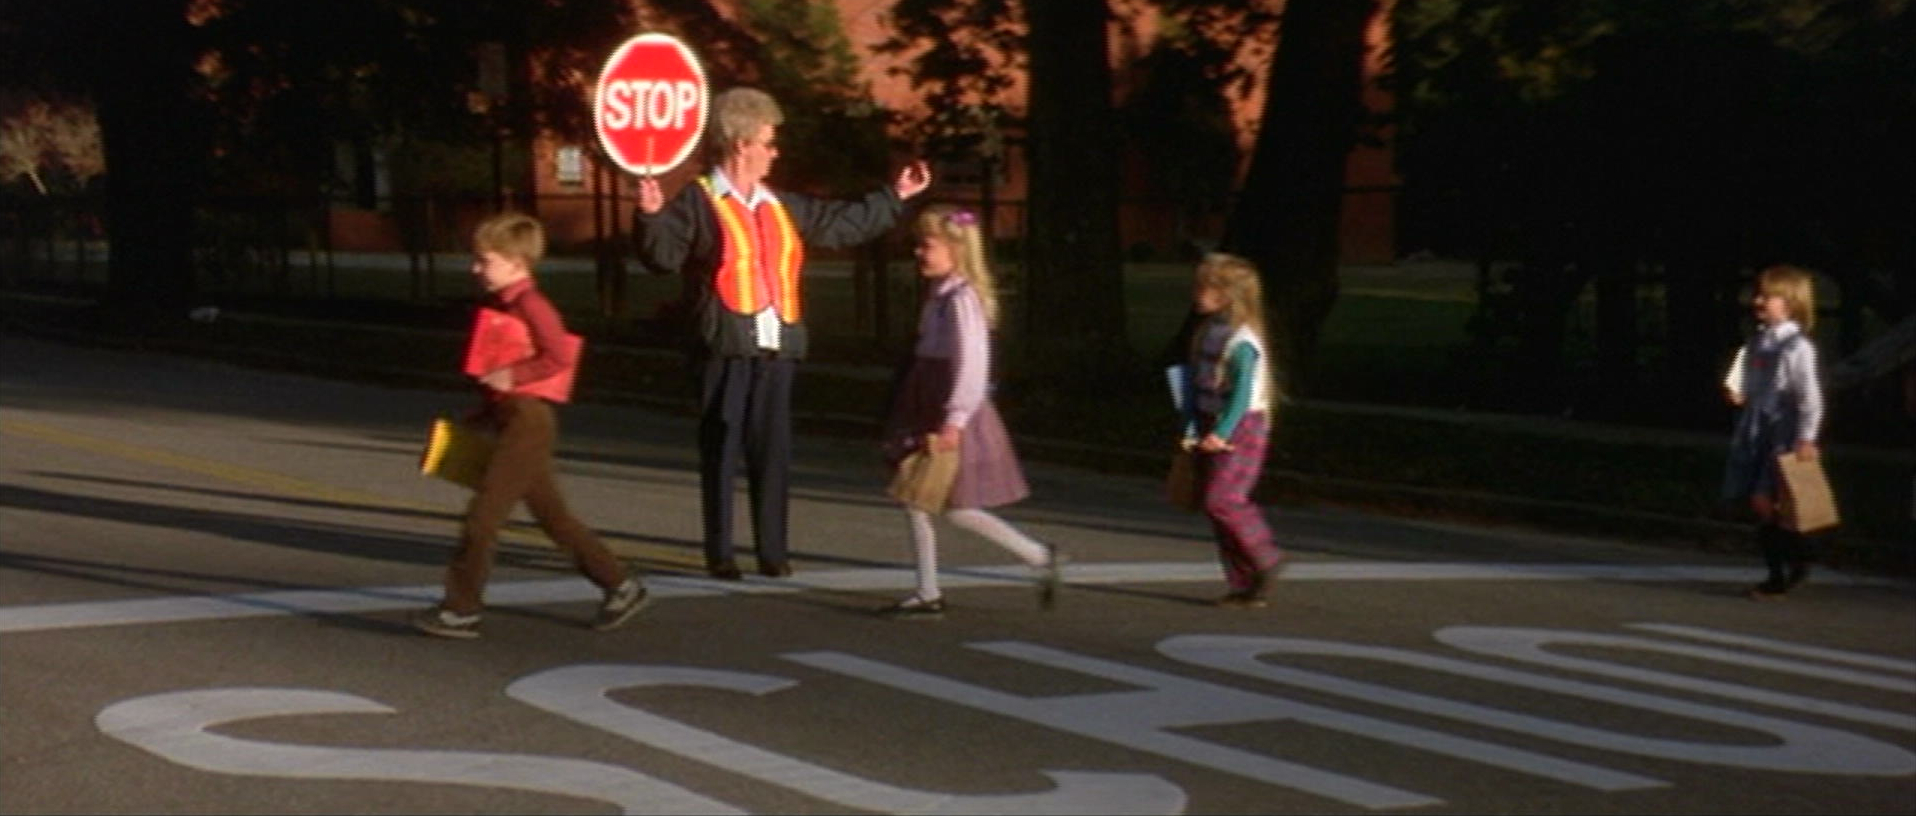 Blue Velvet - David Lynch - crossing guard - children - crosswalk